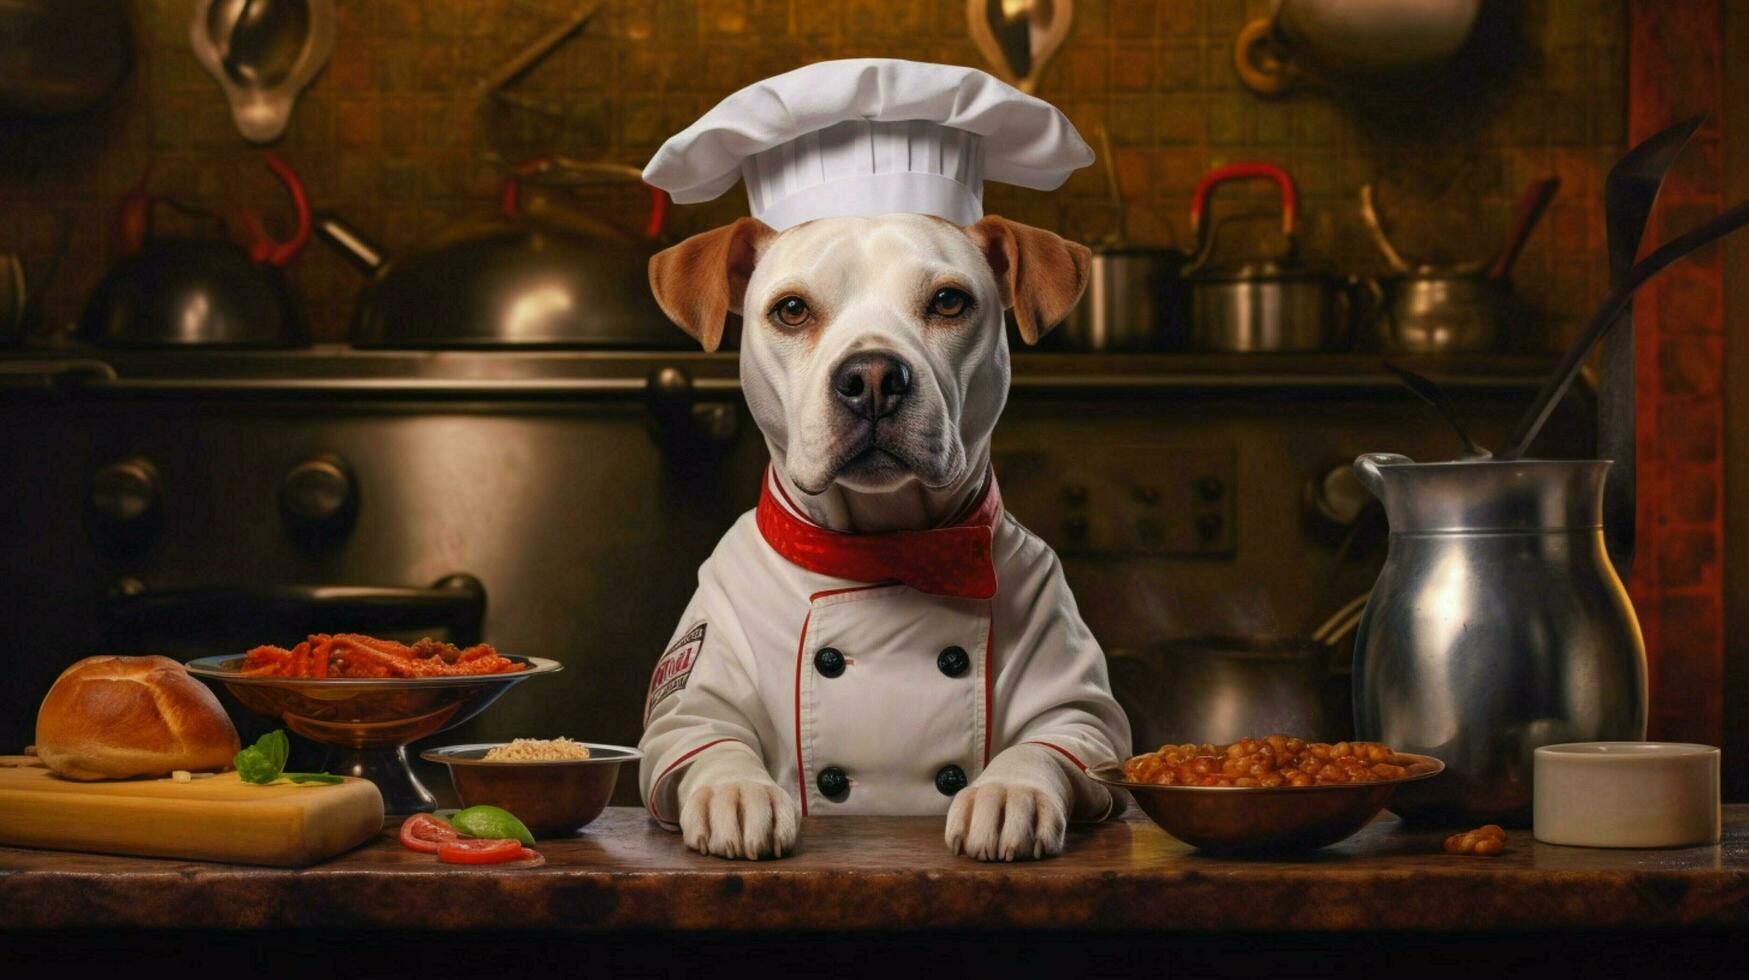 Koch Hund Porträt Kochen foto